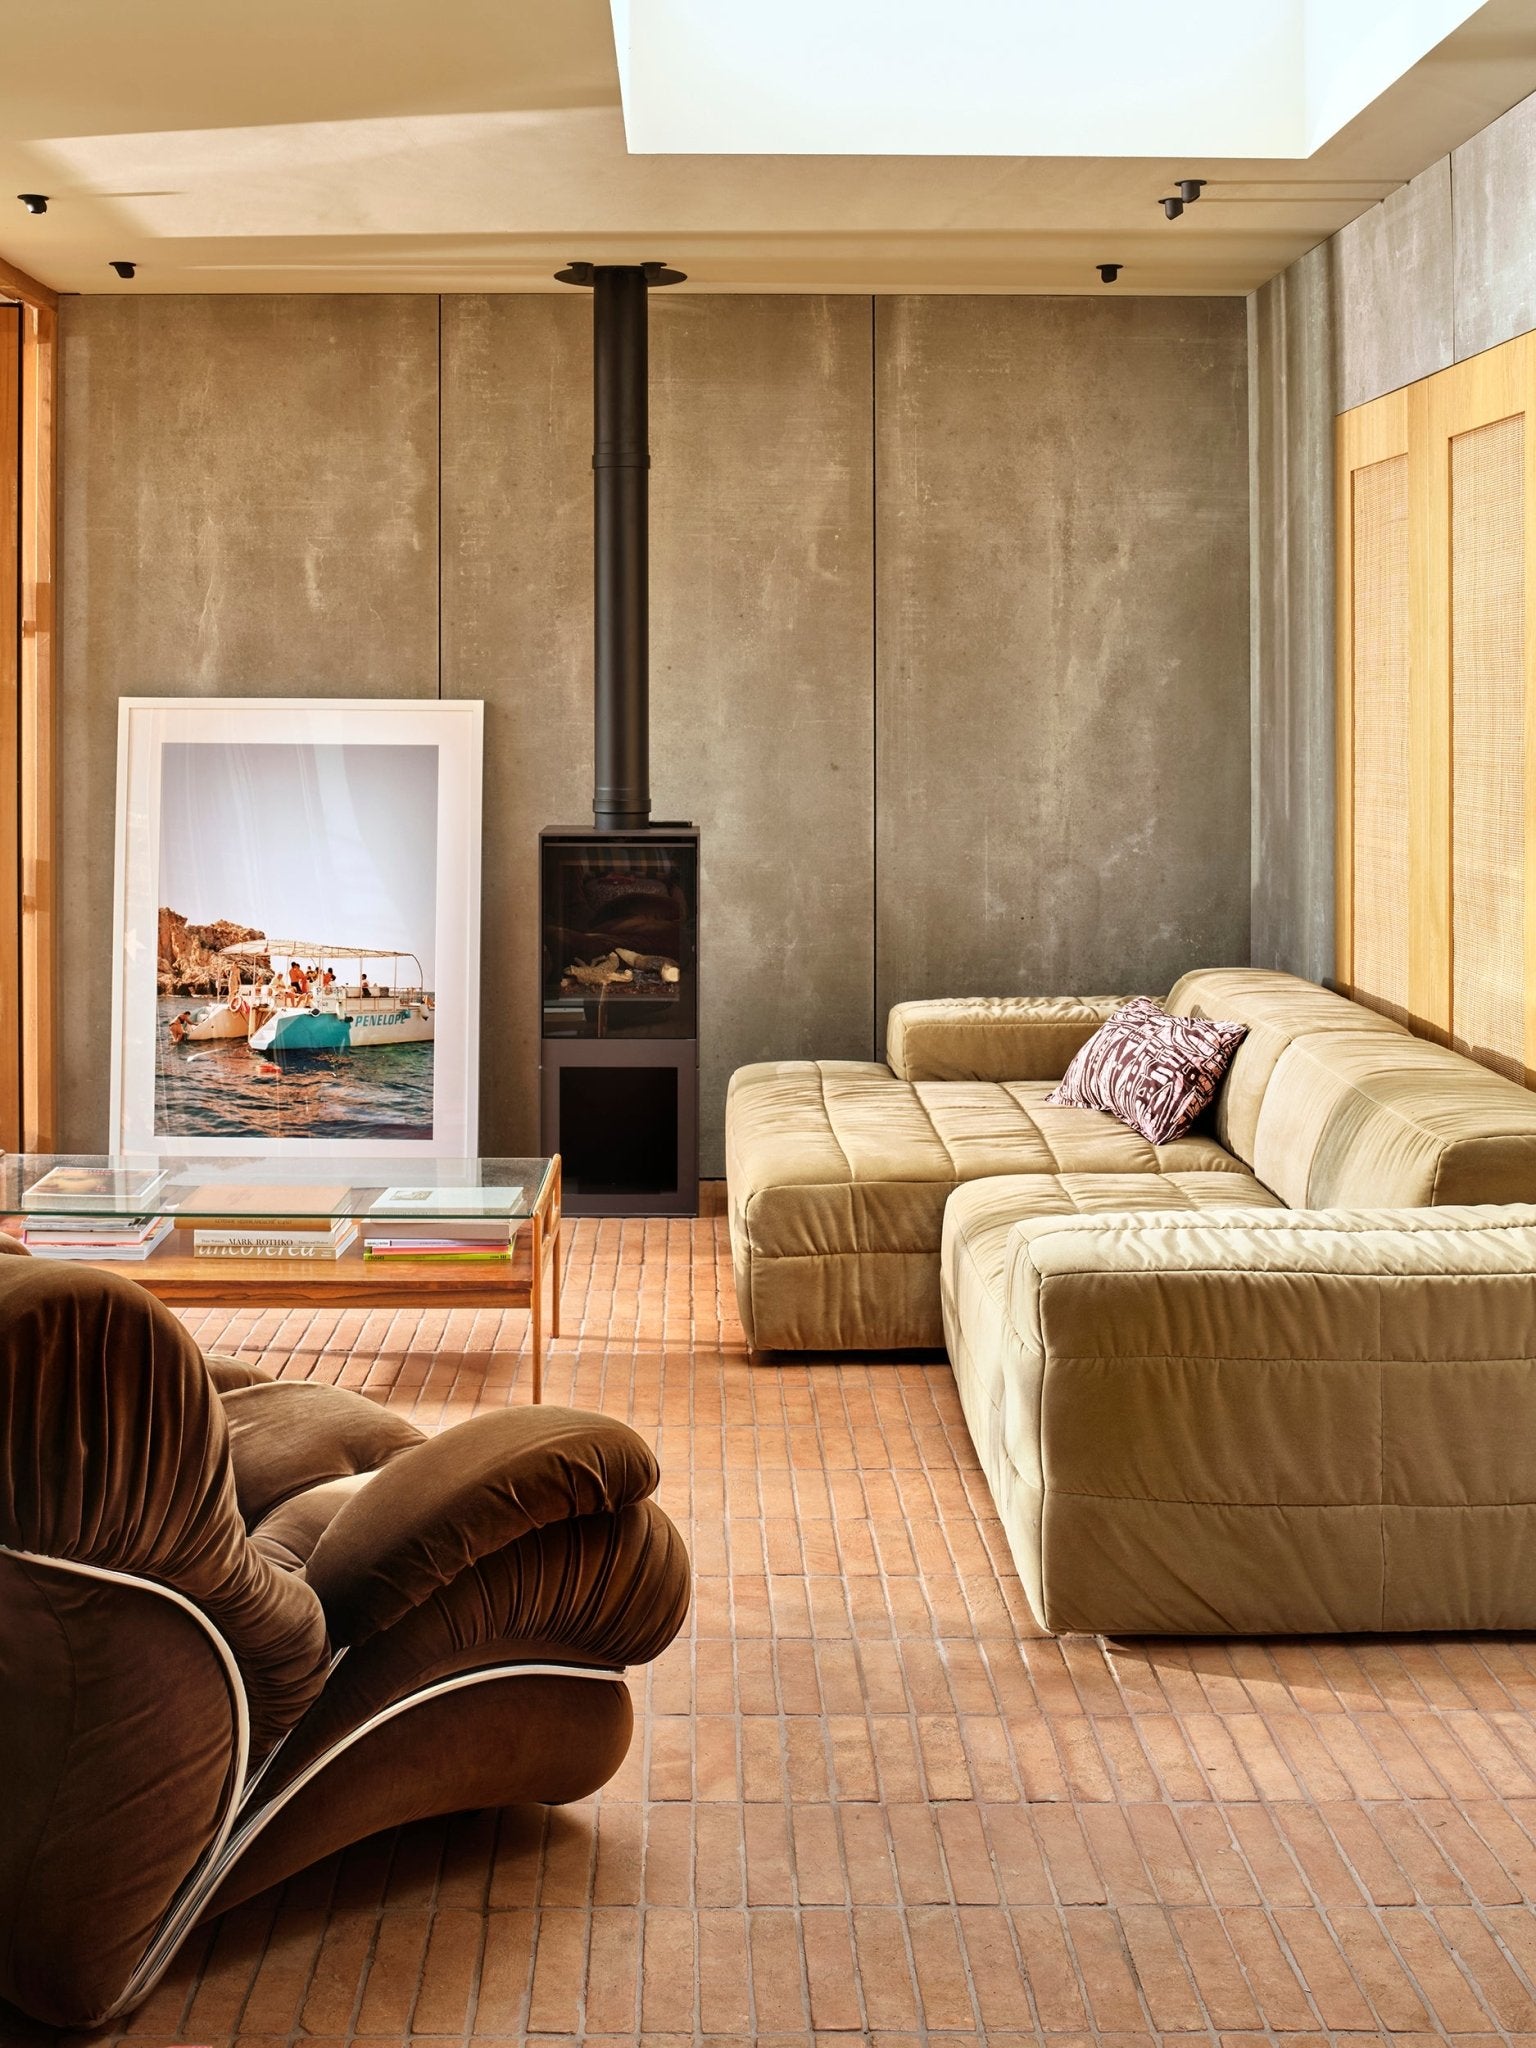 Brut sofa - Element right, royal velvet, cream - Urban Nest